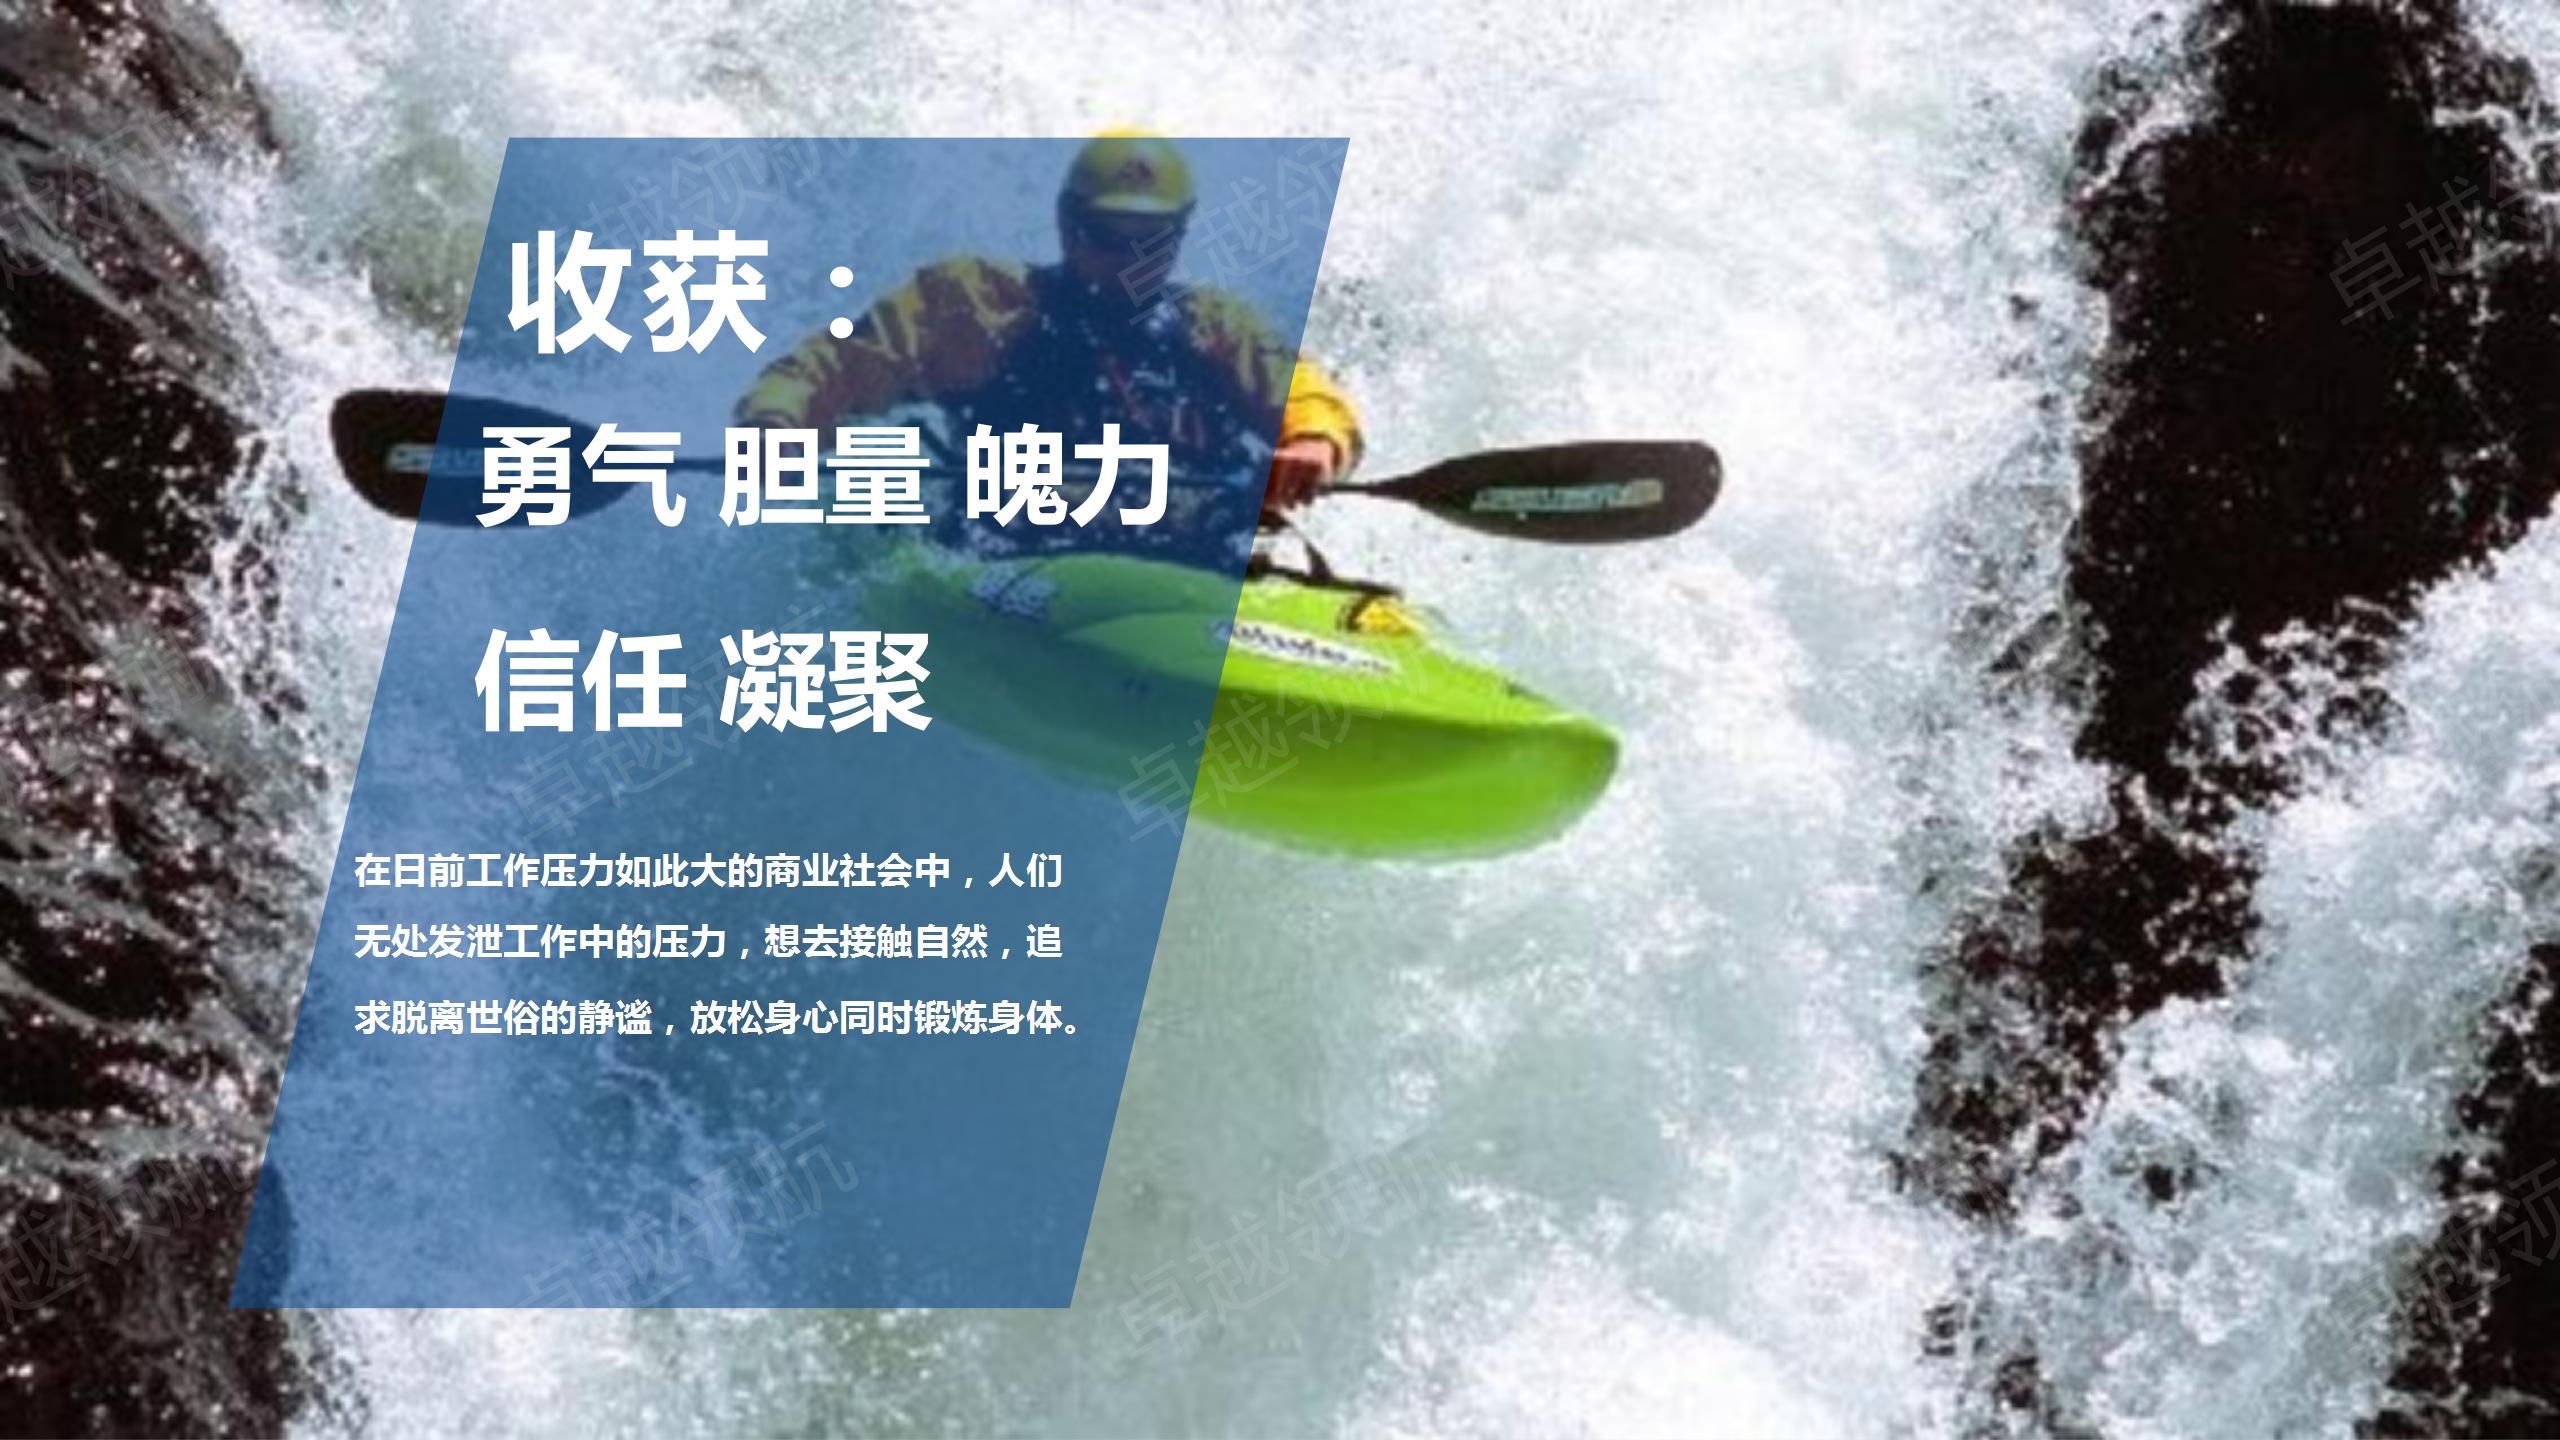 夏季水上皮划艇团建活动_03.jpg